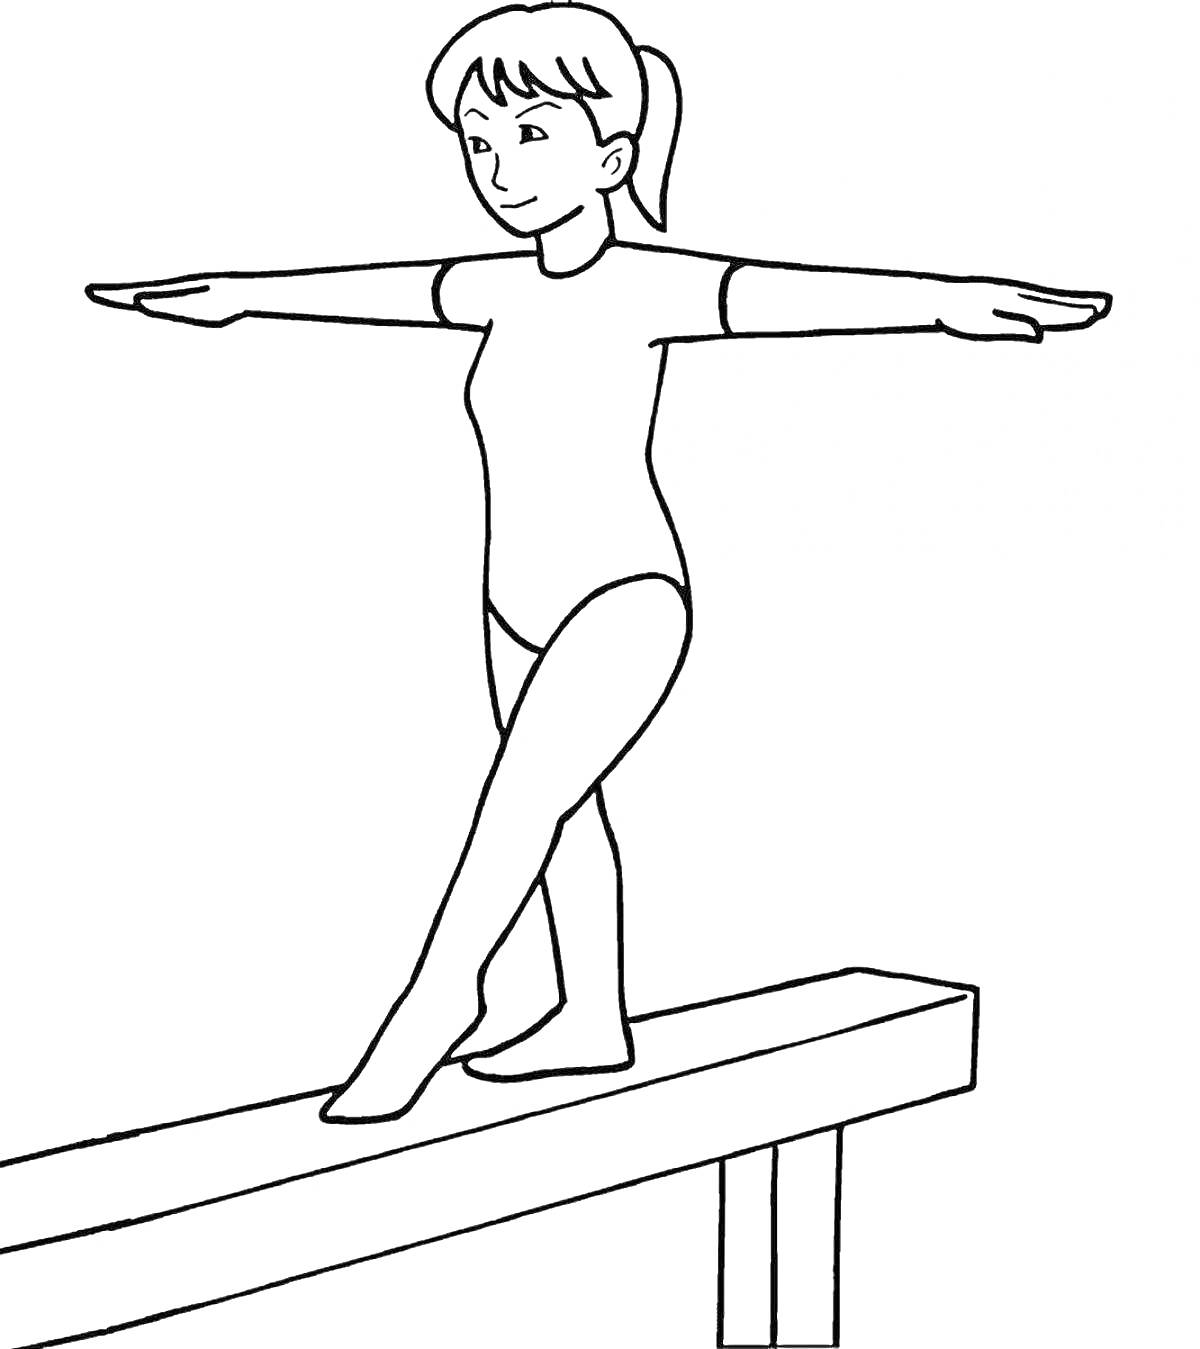 Раскраска Девочка-гимнастка на бревне выполняющая упражнение в гимнастическом костюме